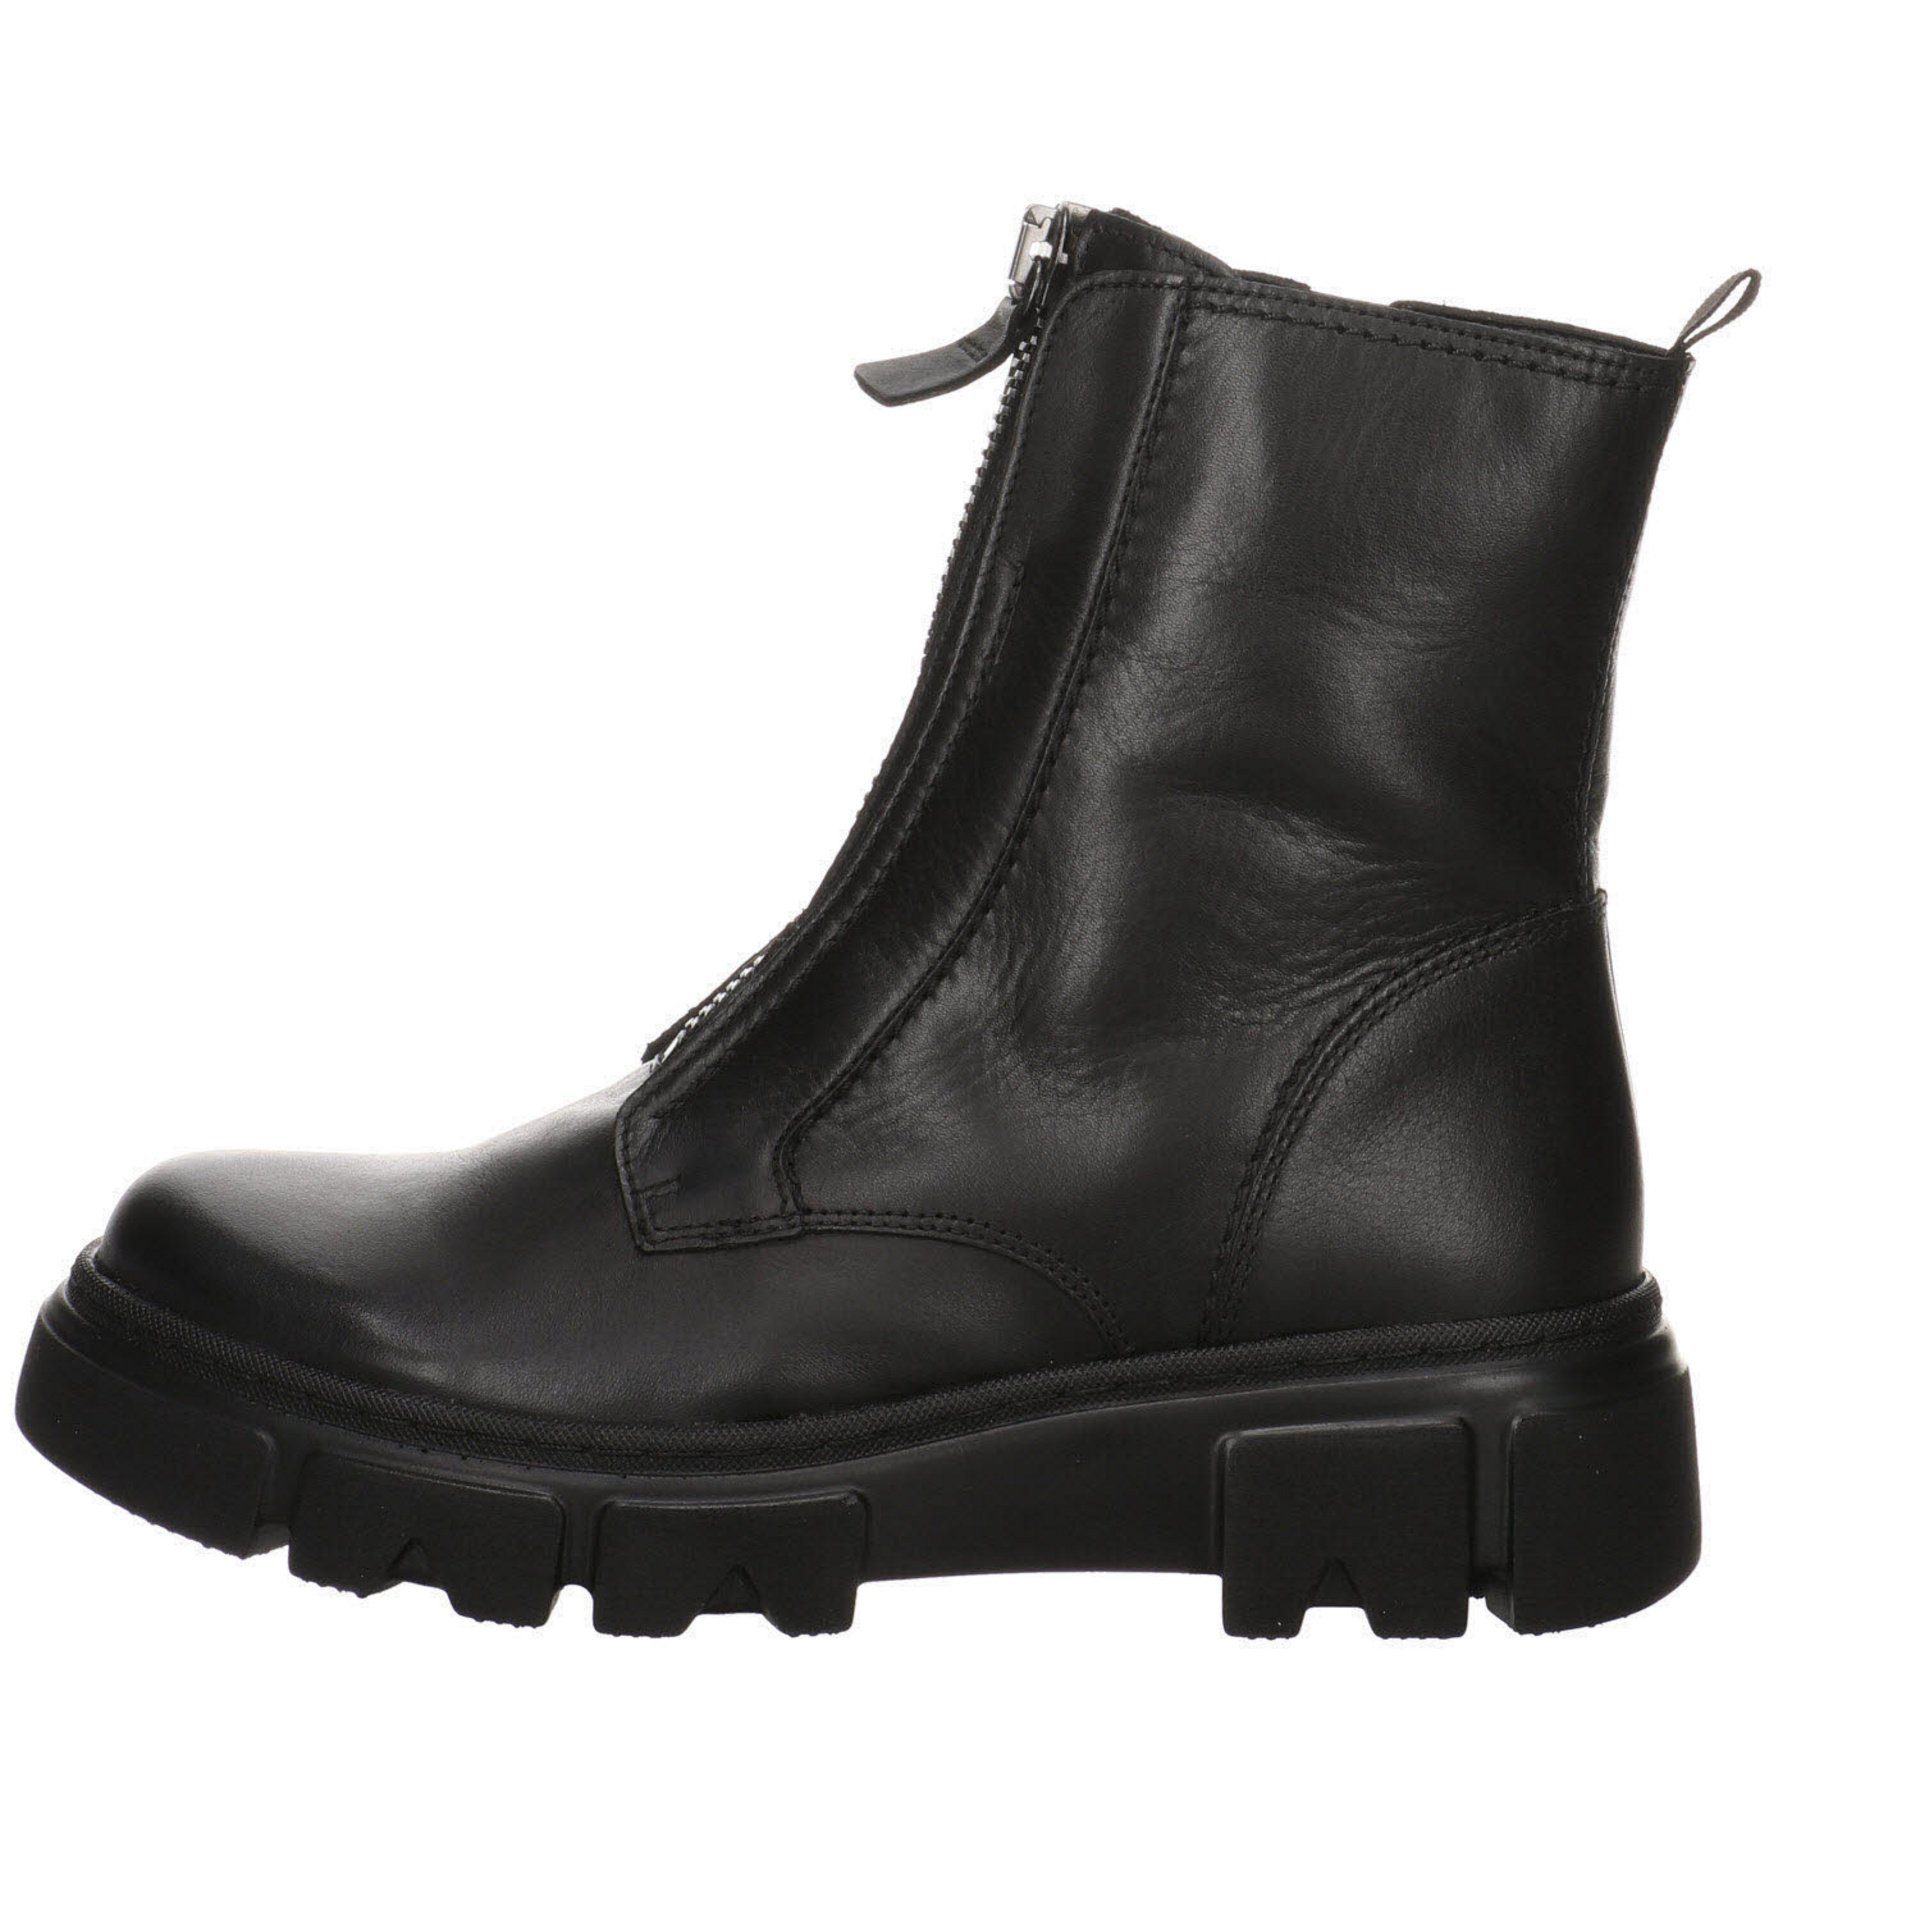 Gabor Damen Stiefelette Stiefeletten schwarz(altsilber) Freizeit Boots Glattleder Schuhe Elegant